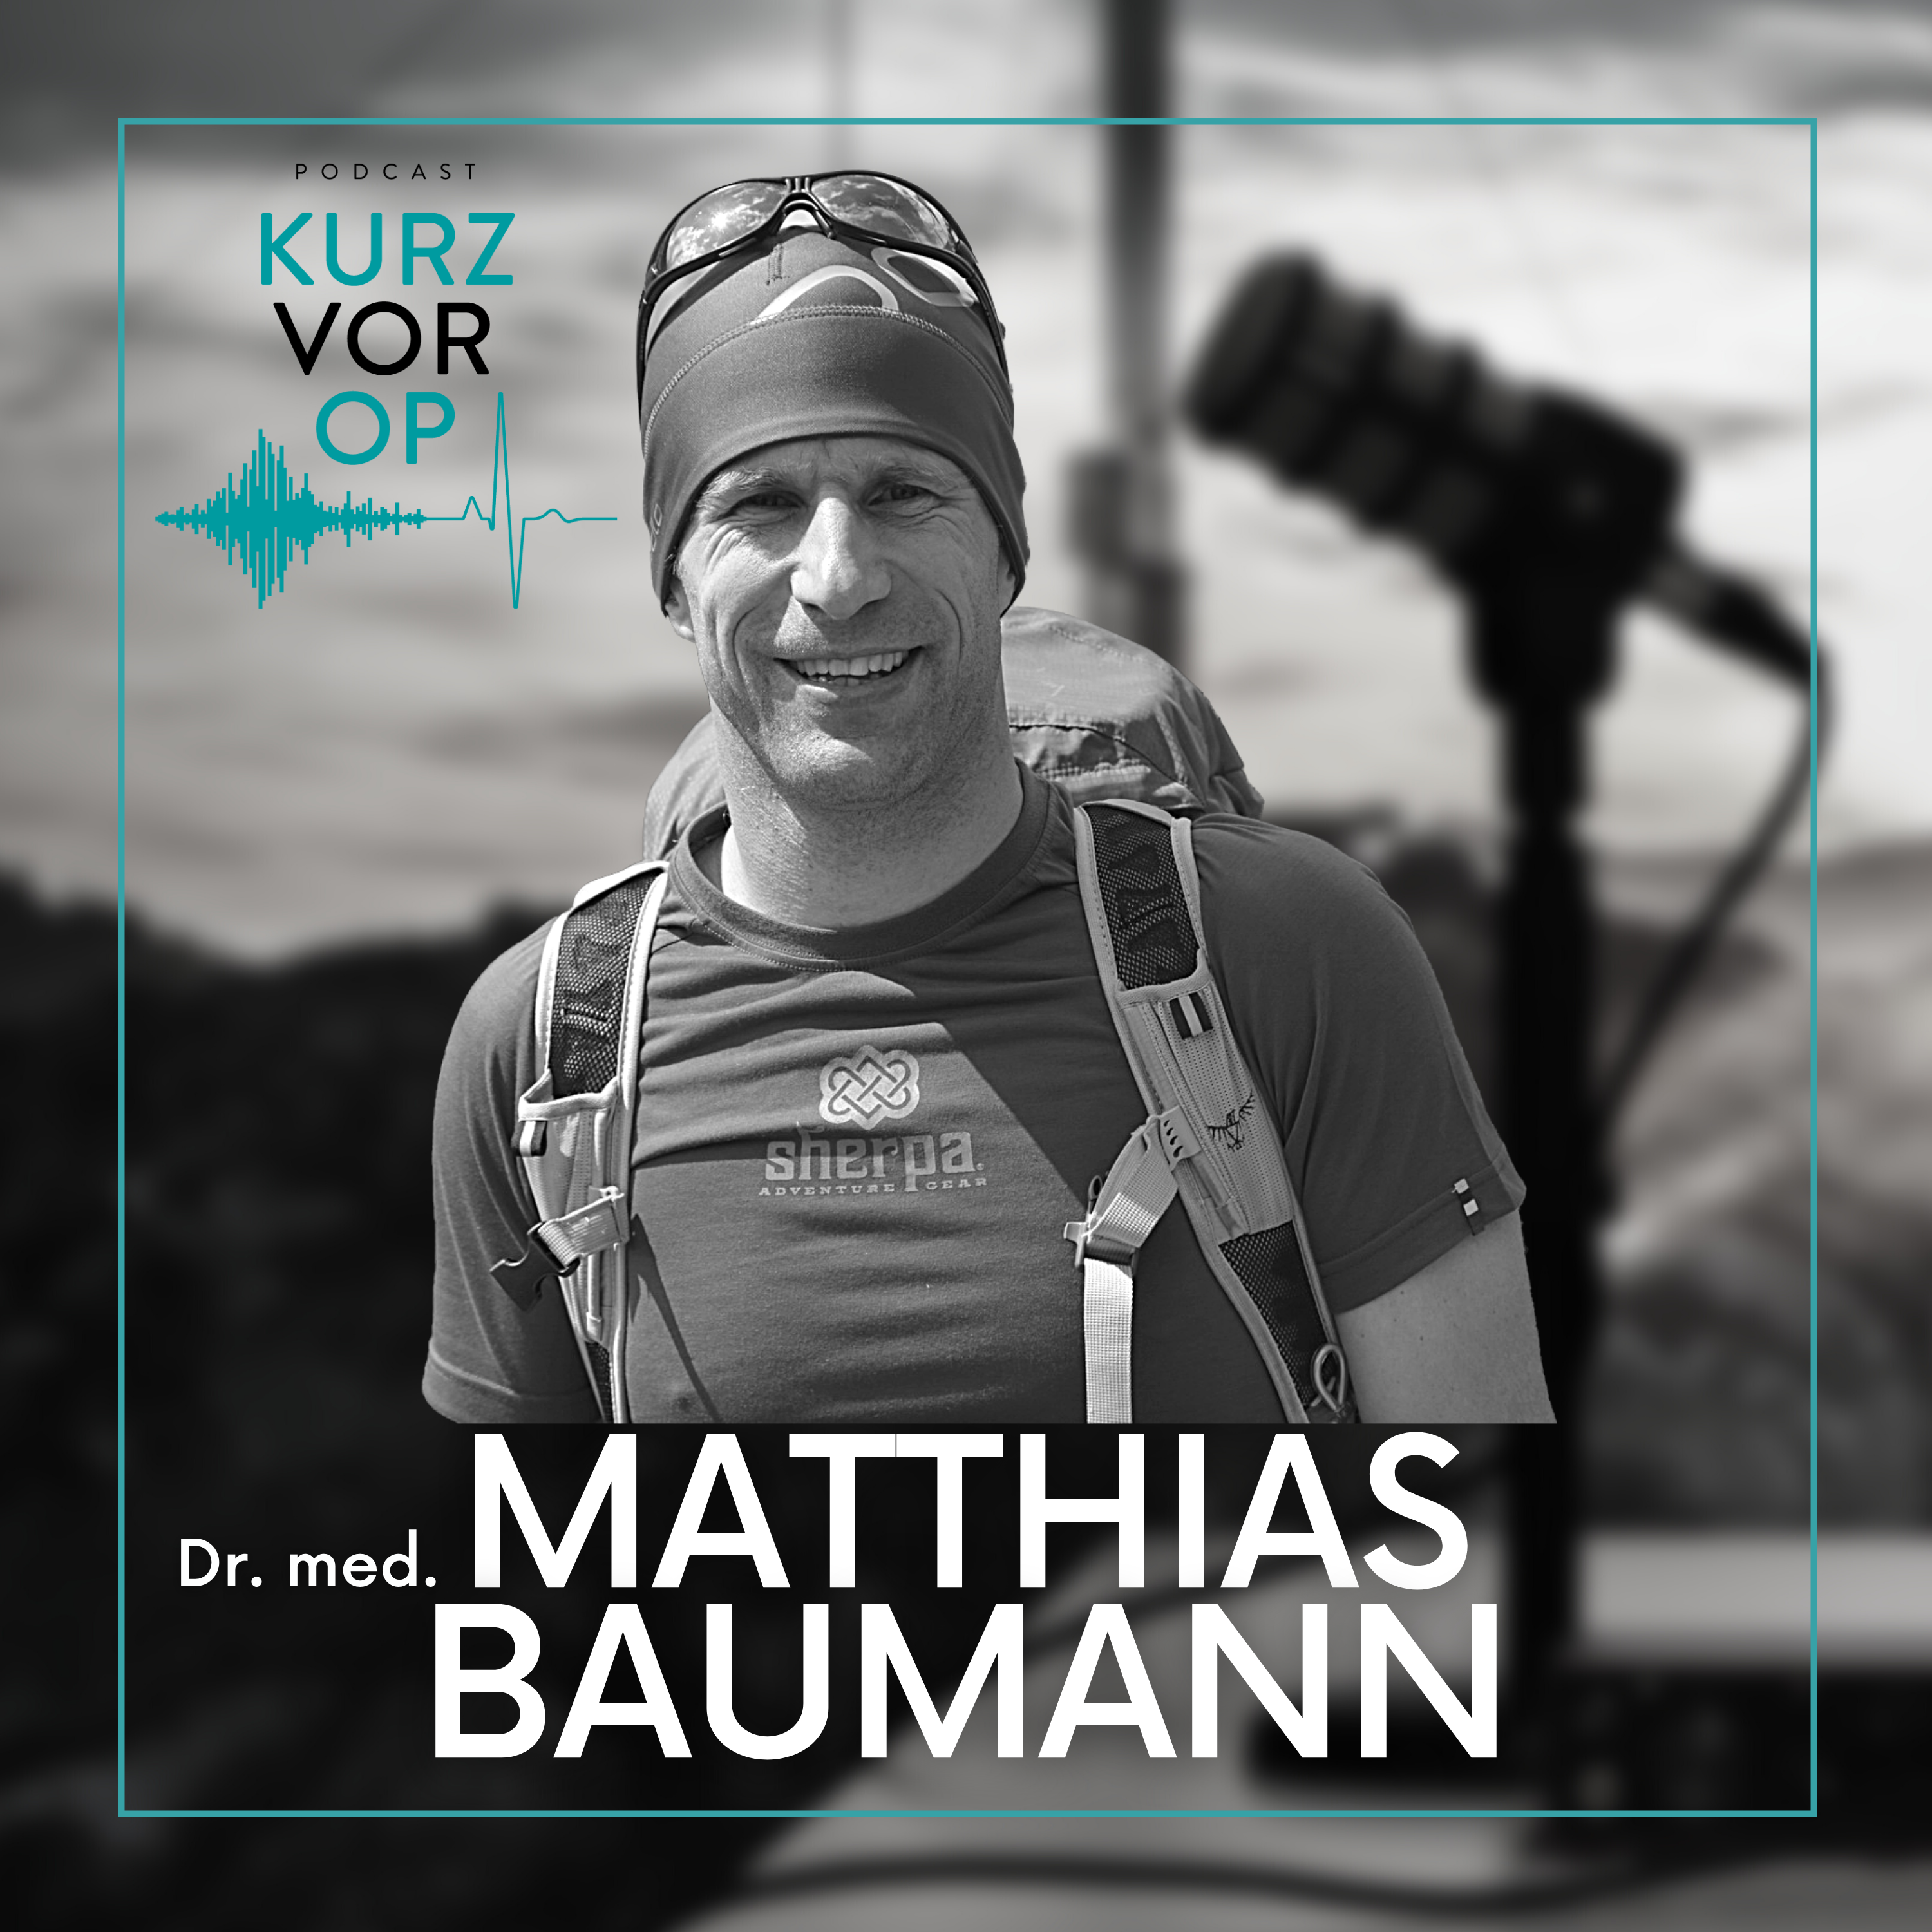 Dr. Matthias Baumann im OPED Podcast "Kurz vor OP"